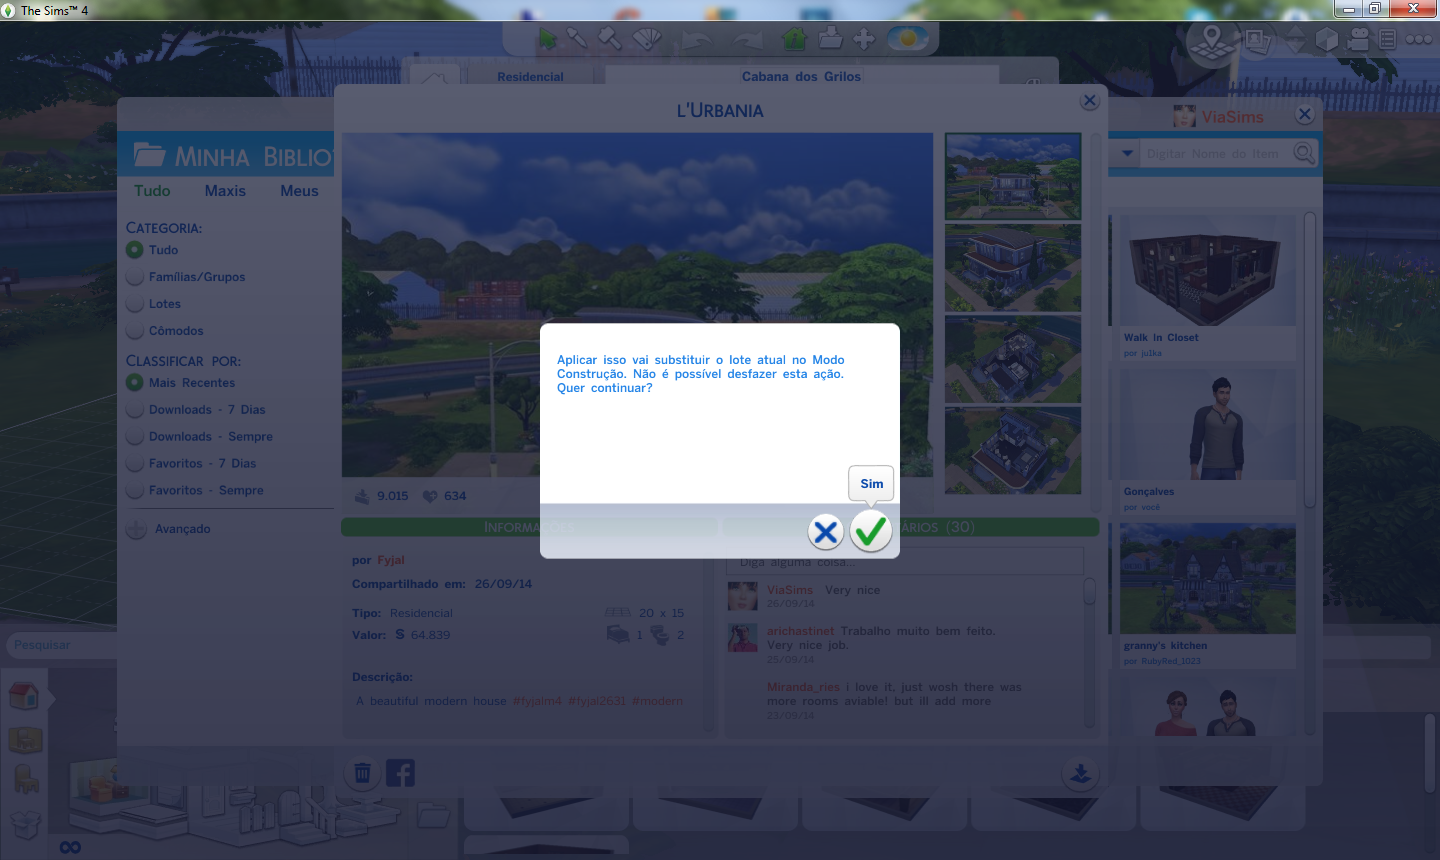 Dica de Construção - Como Remover Quadrados de Marcação - The Sims 4 #